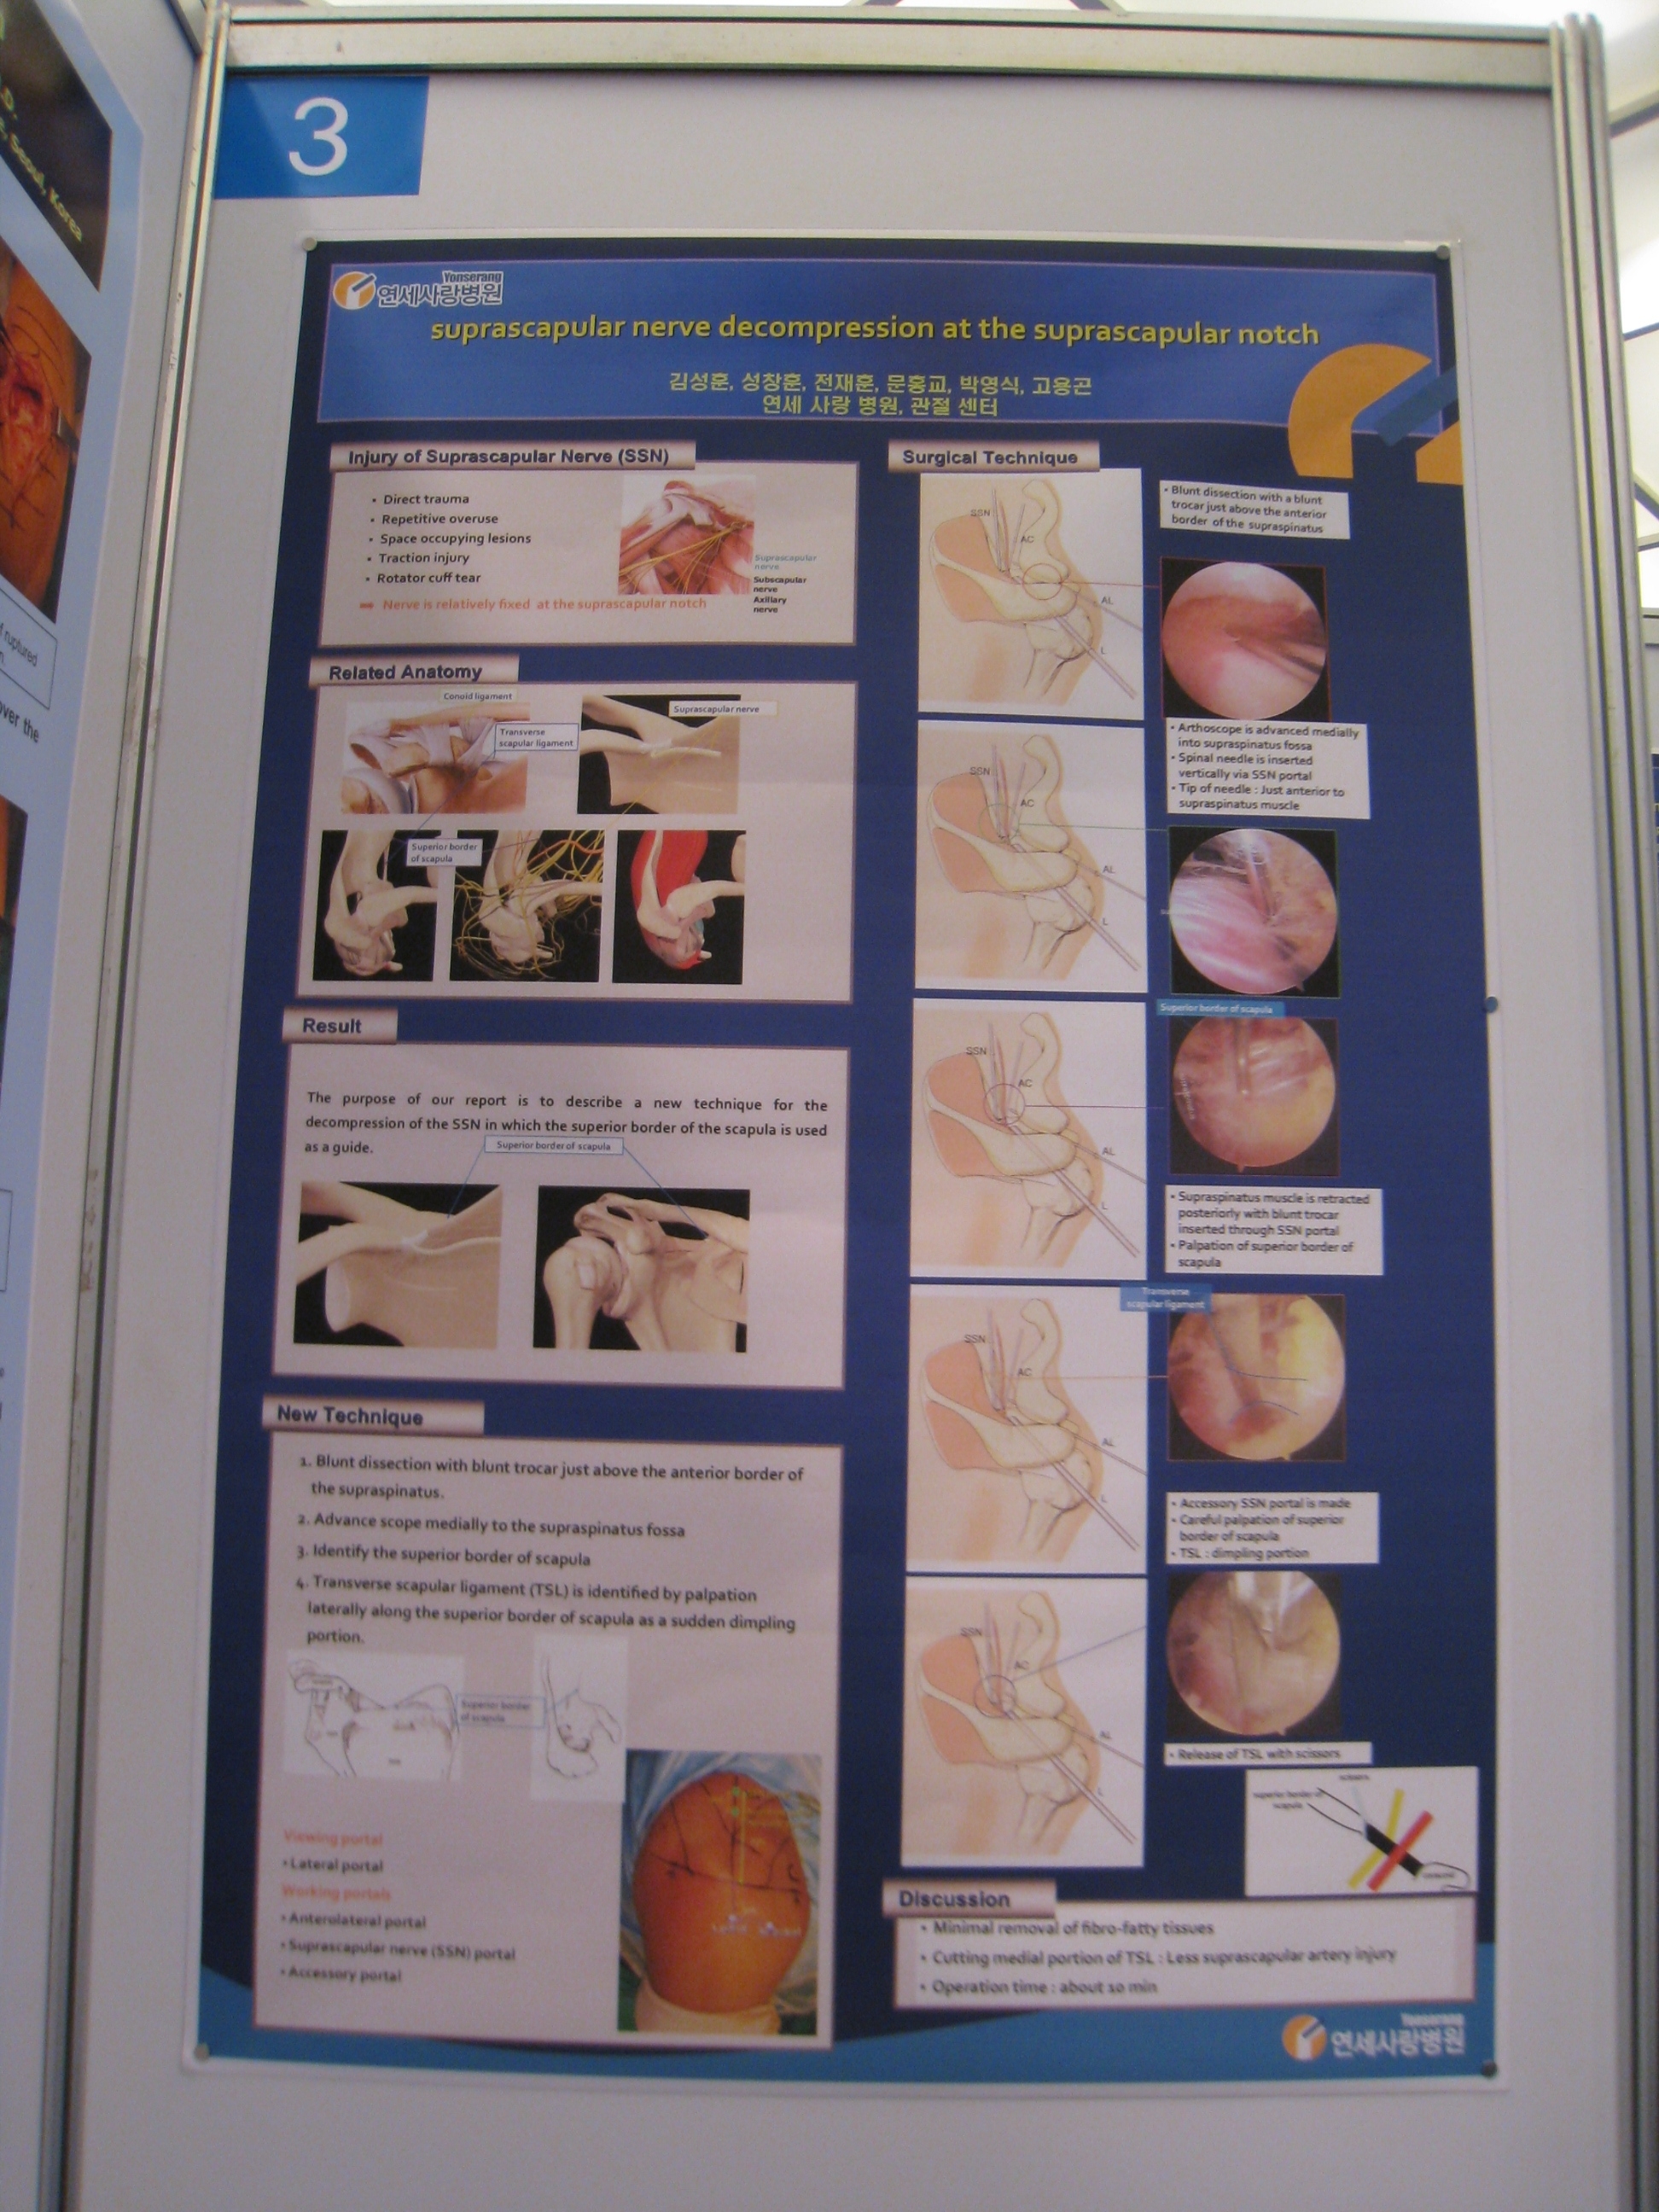 [2009 대한정형외과 학회 포스터] 관절 내시경을 이용한 견갑상 절흔에서의 견감상 신경 감압술 게시글의 1번째 첨부파일입니다.